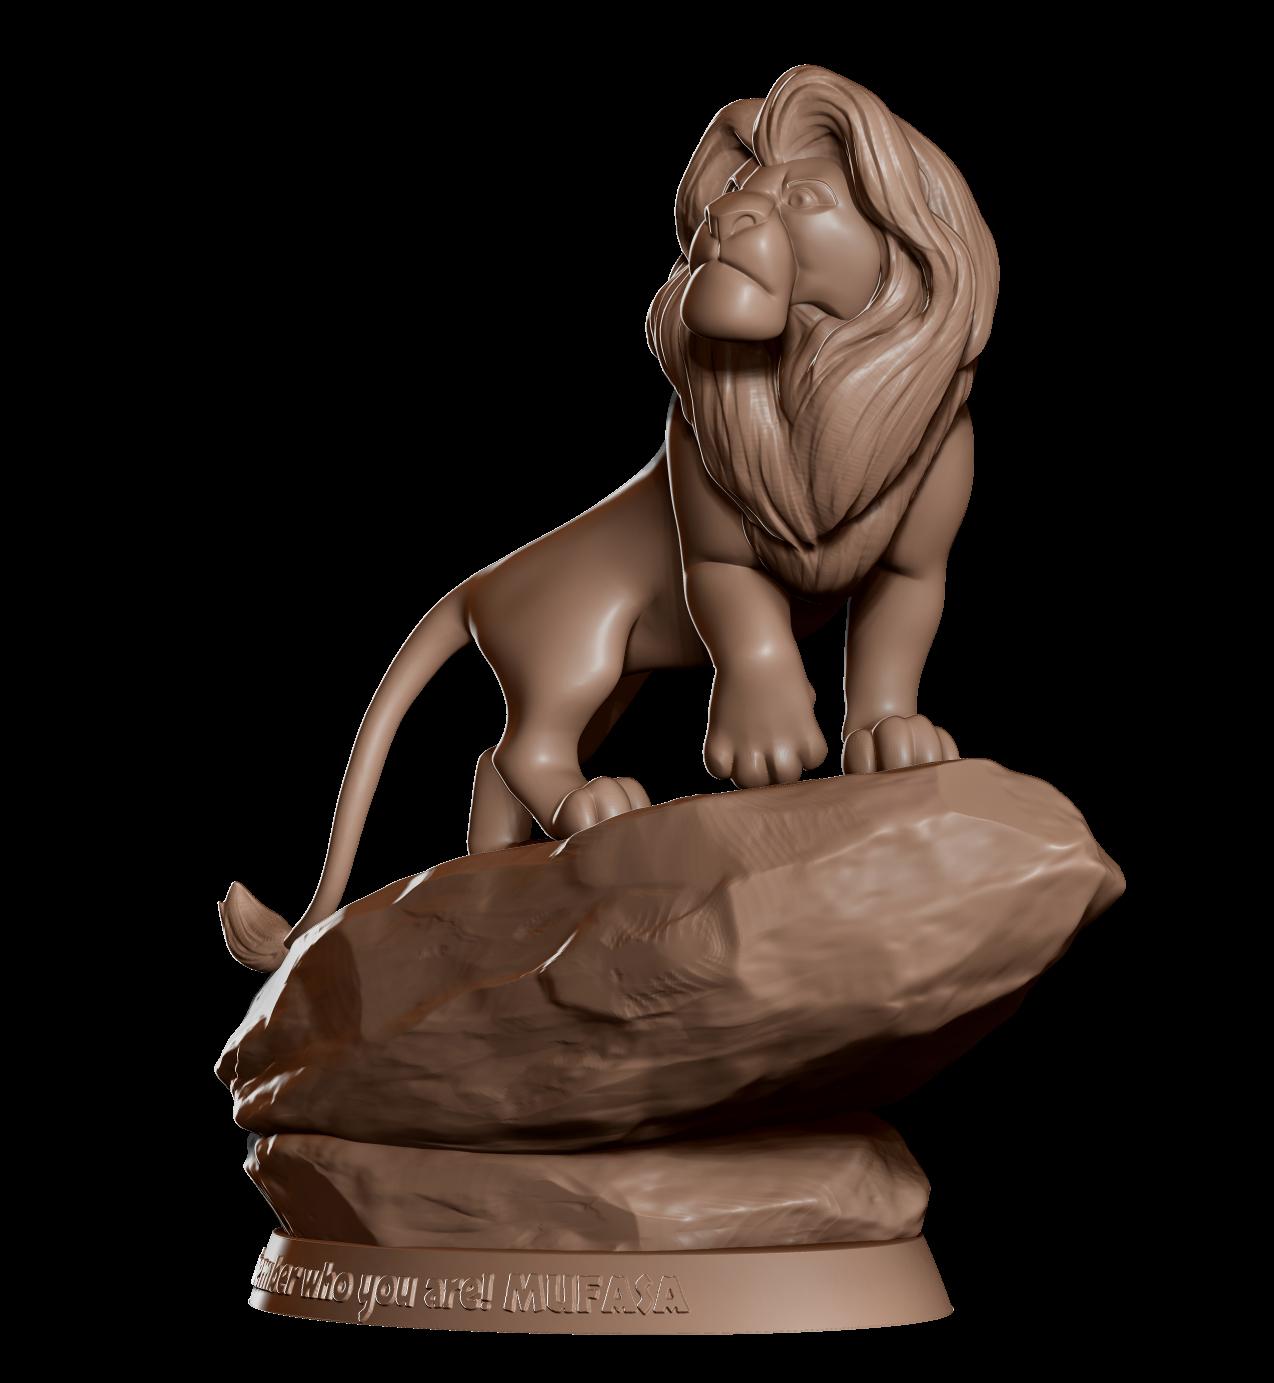 Mufasa Lion King Sculpture 3d model